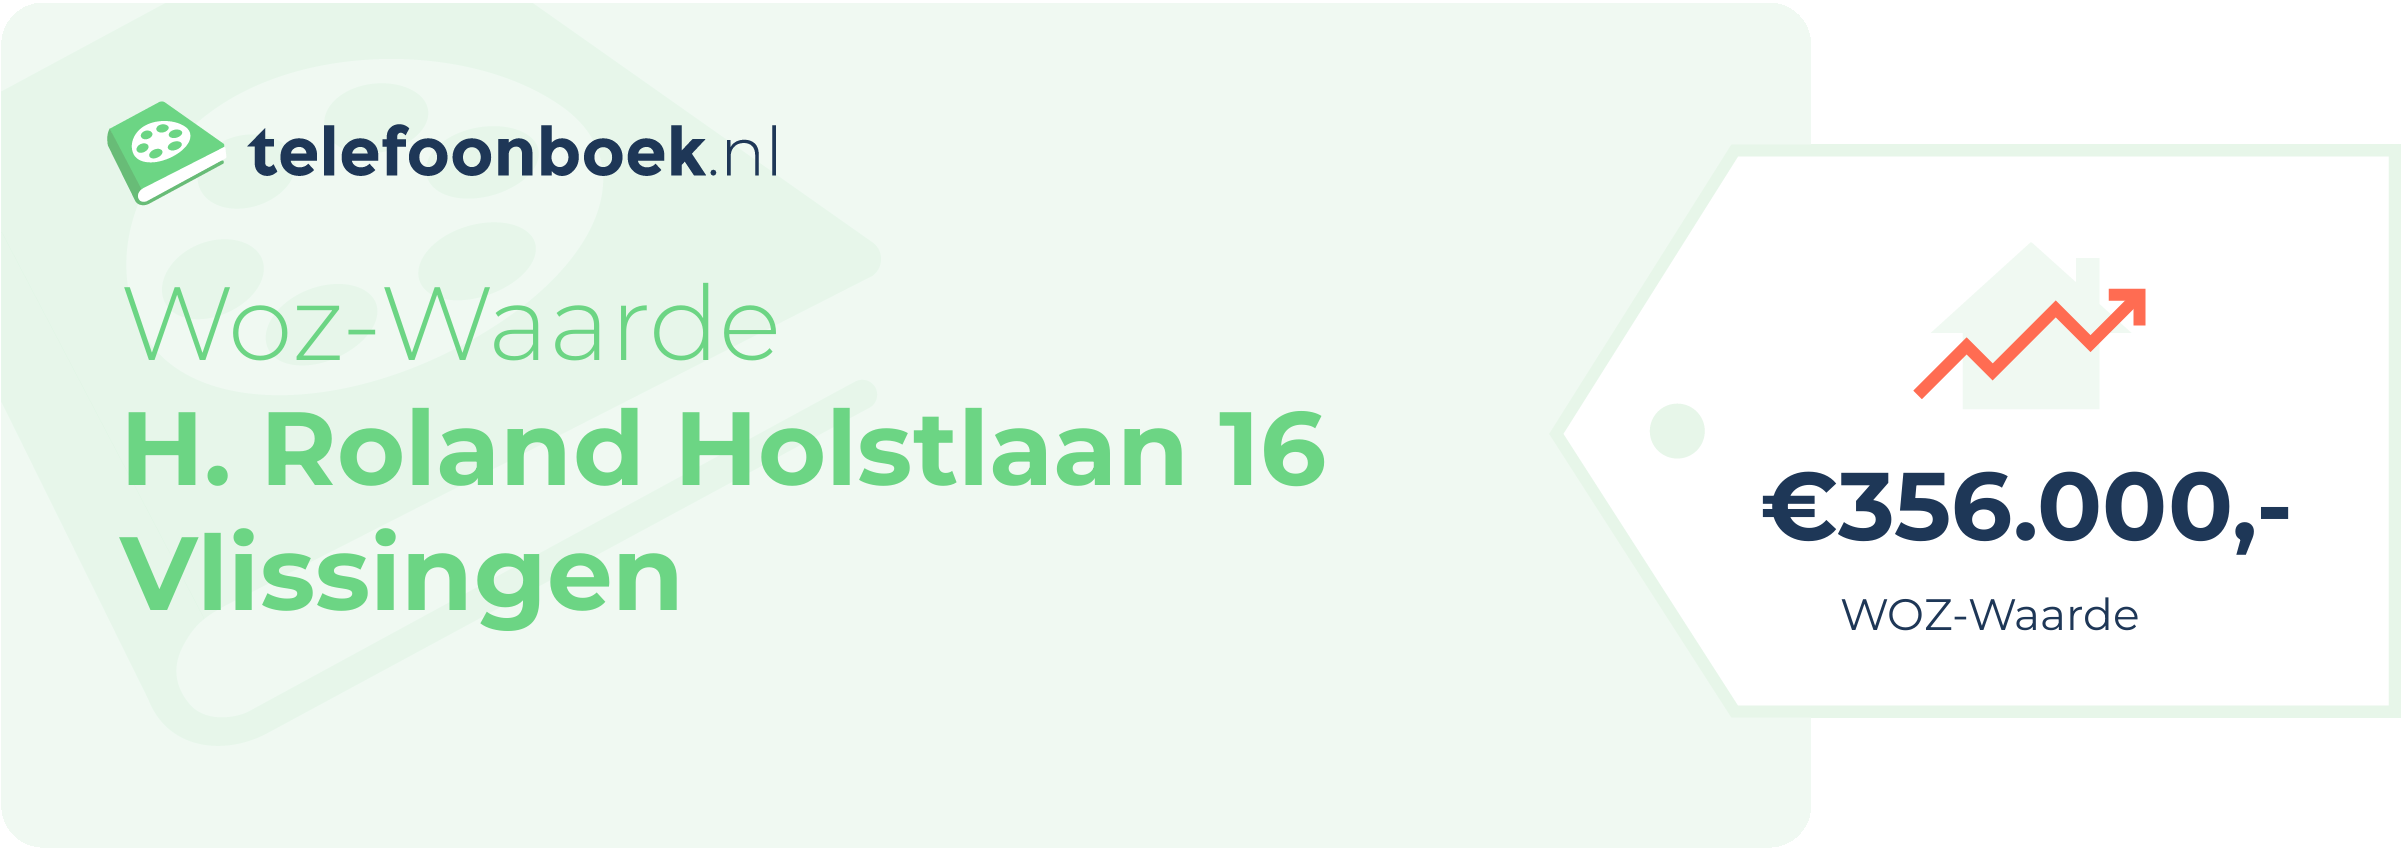 WOZ-waarde H. Roland Holstlaan 16 Vlissingen